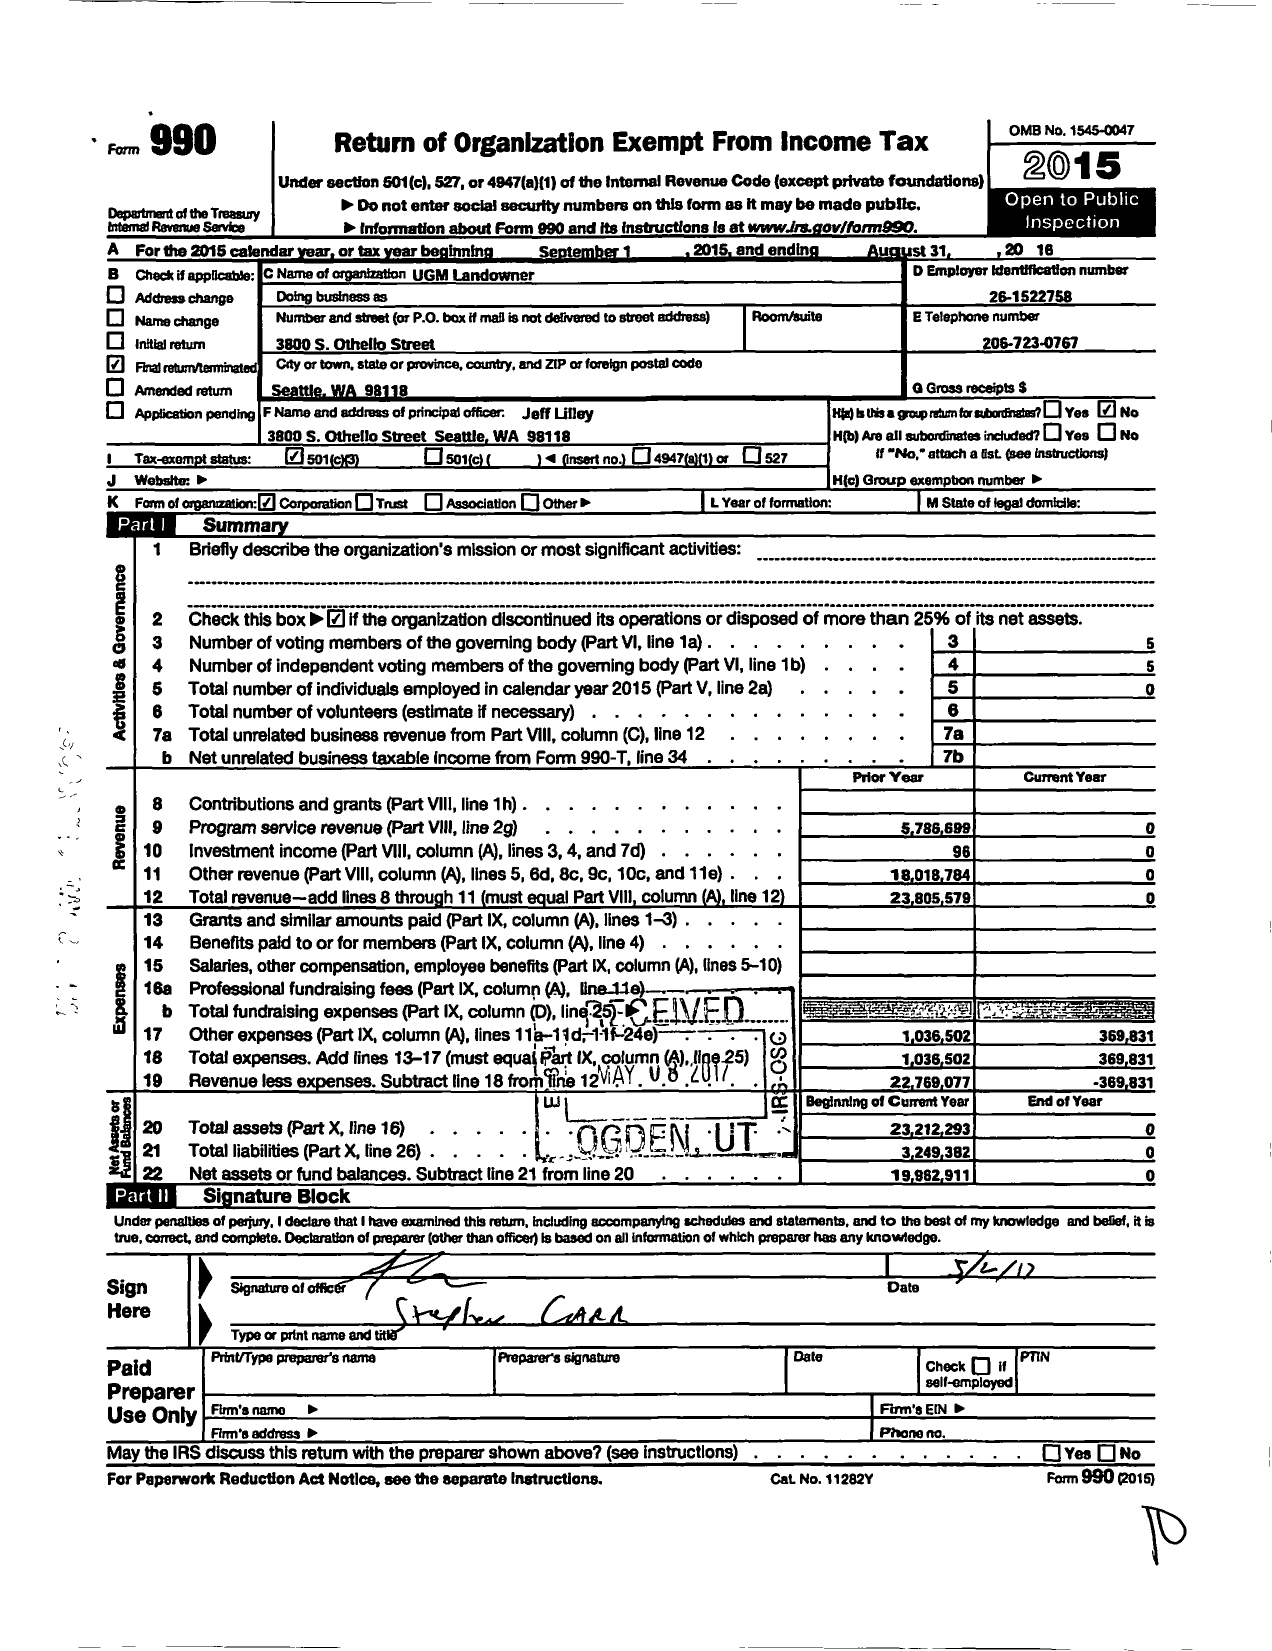 Image of first page of 2015 Form 990 for Ugm Landowner